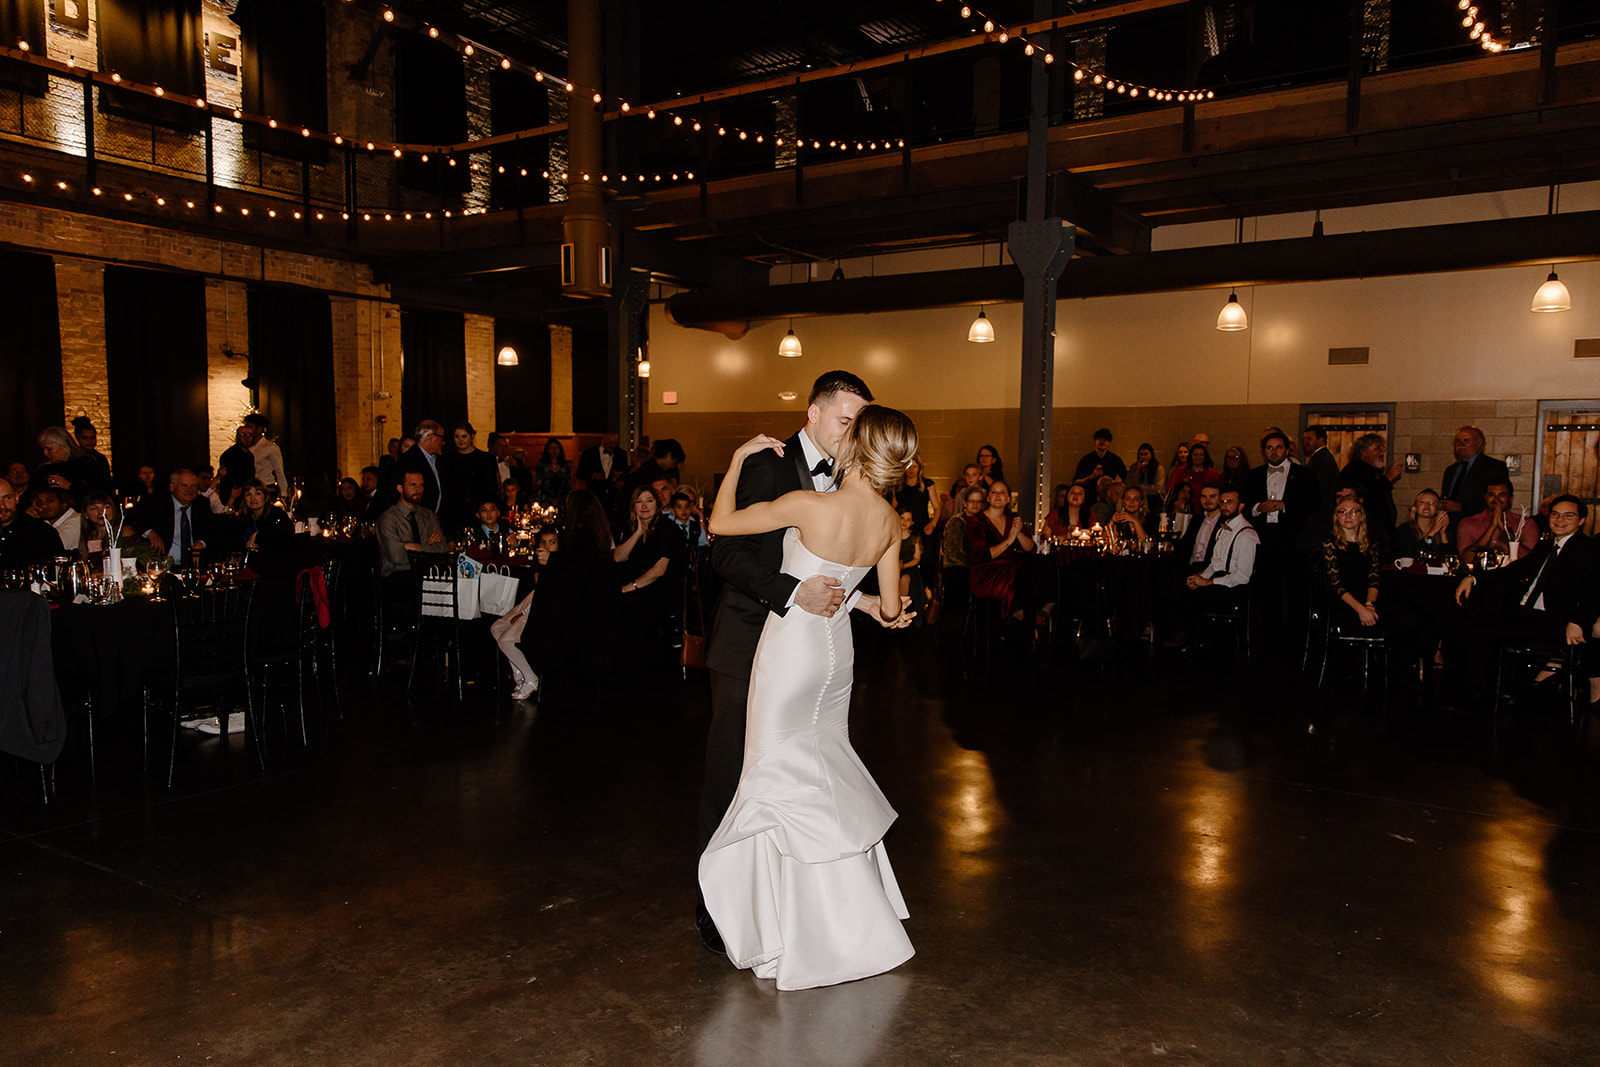 Bride and groom dancing on the dance floor